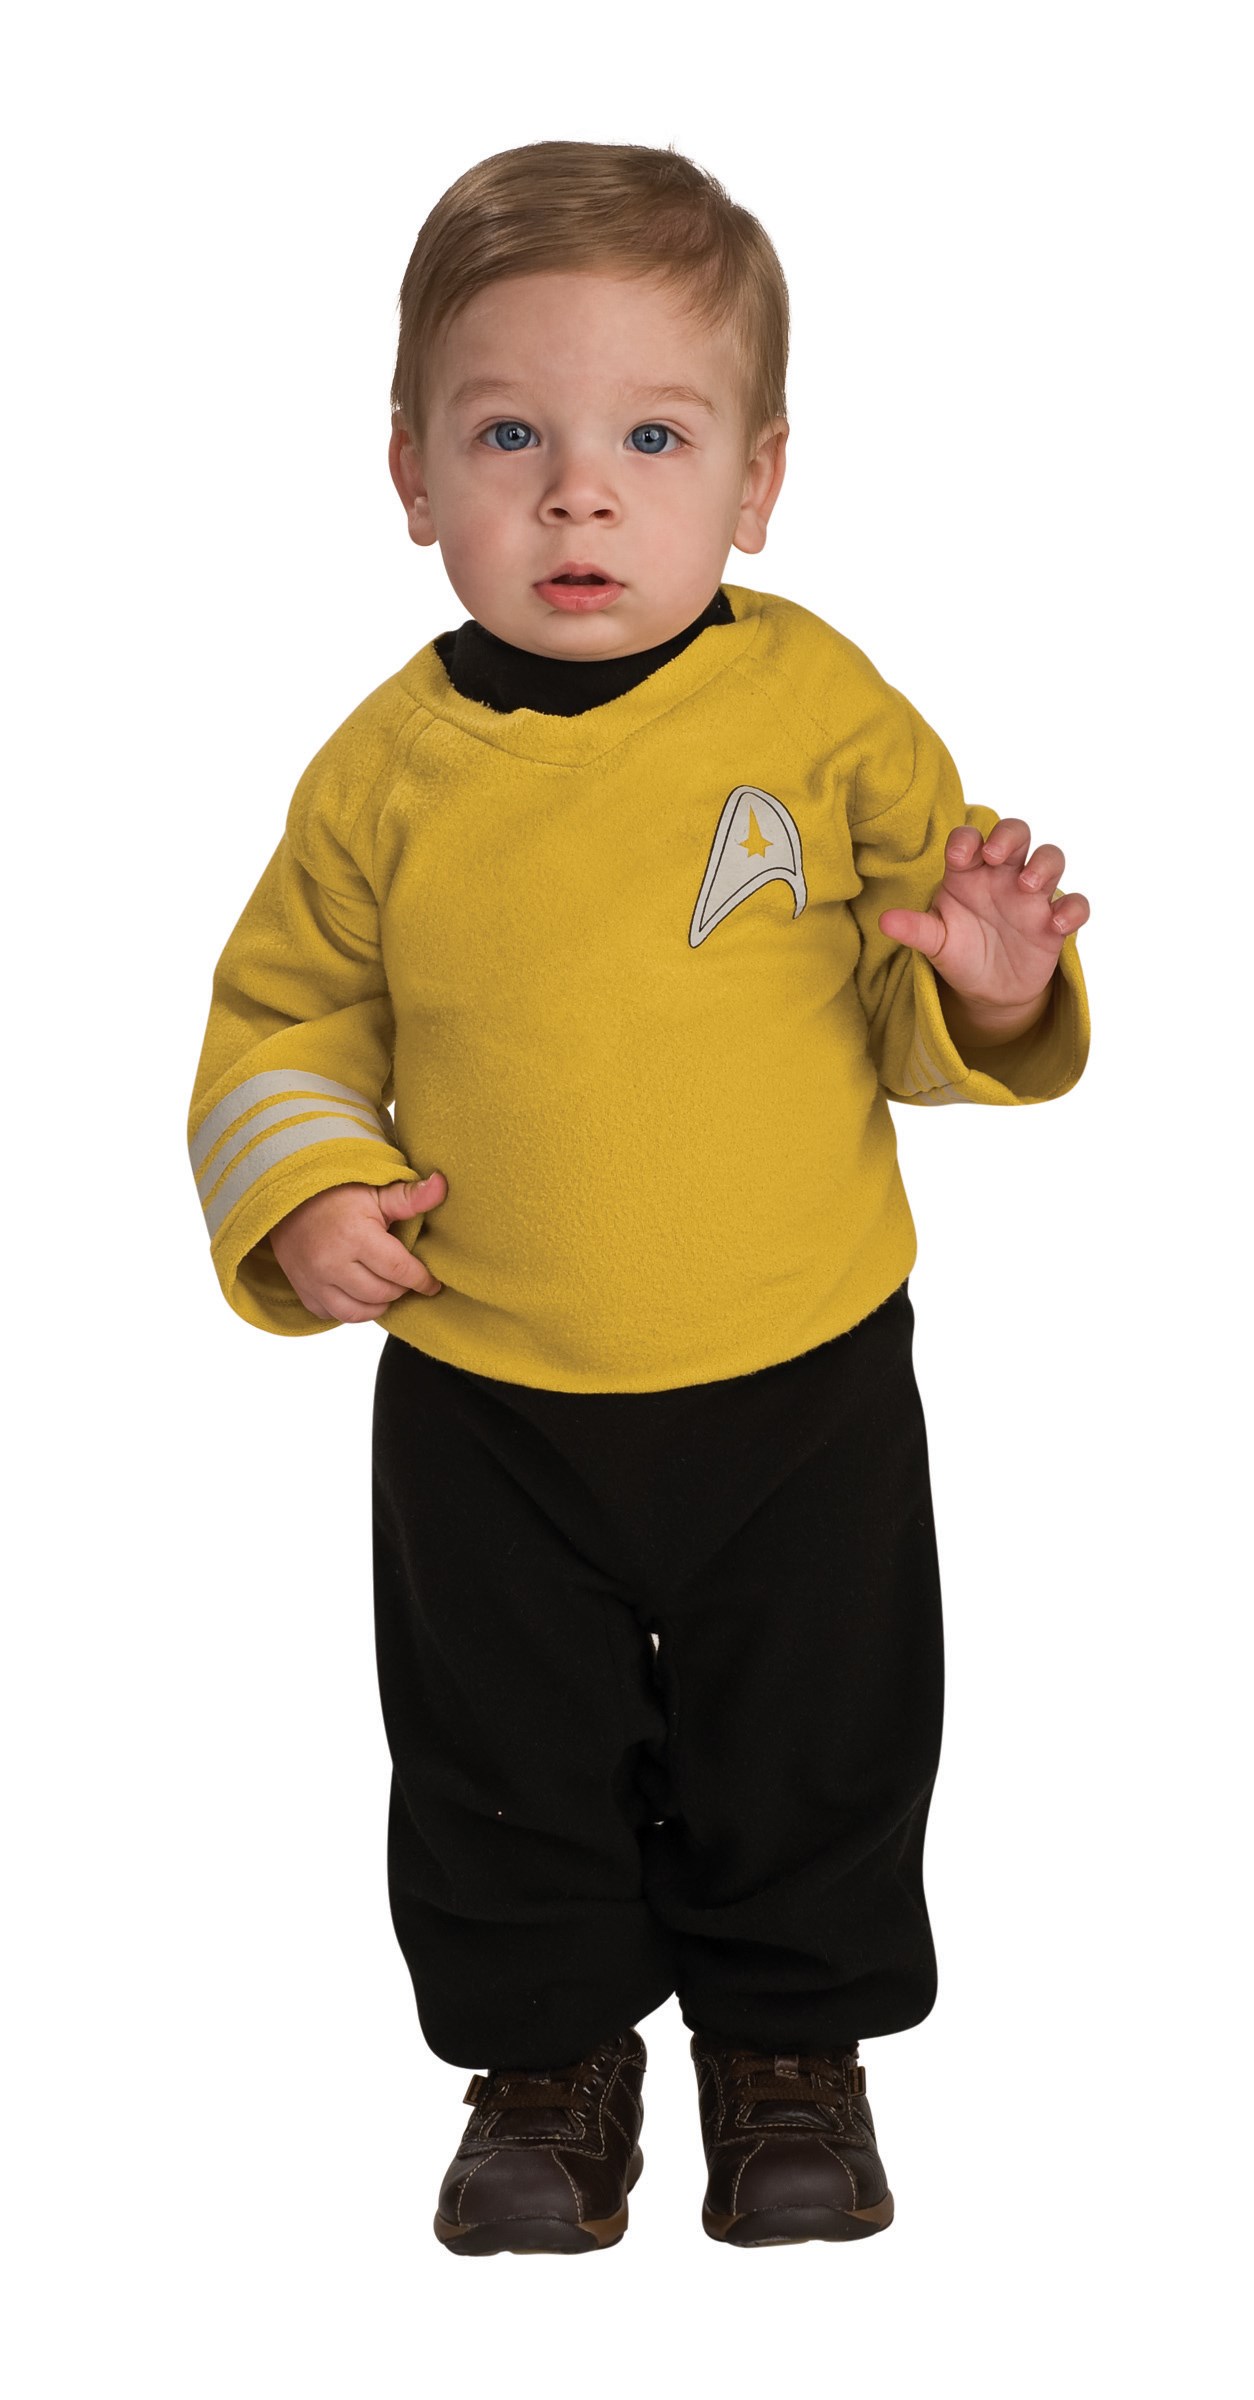 Little Kirk Infant / Toddler Costume